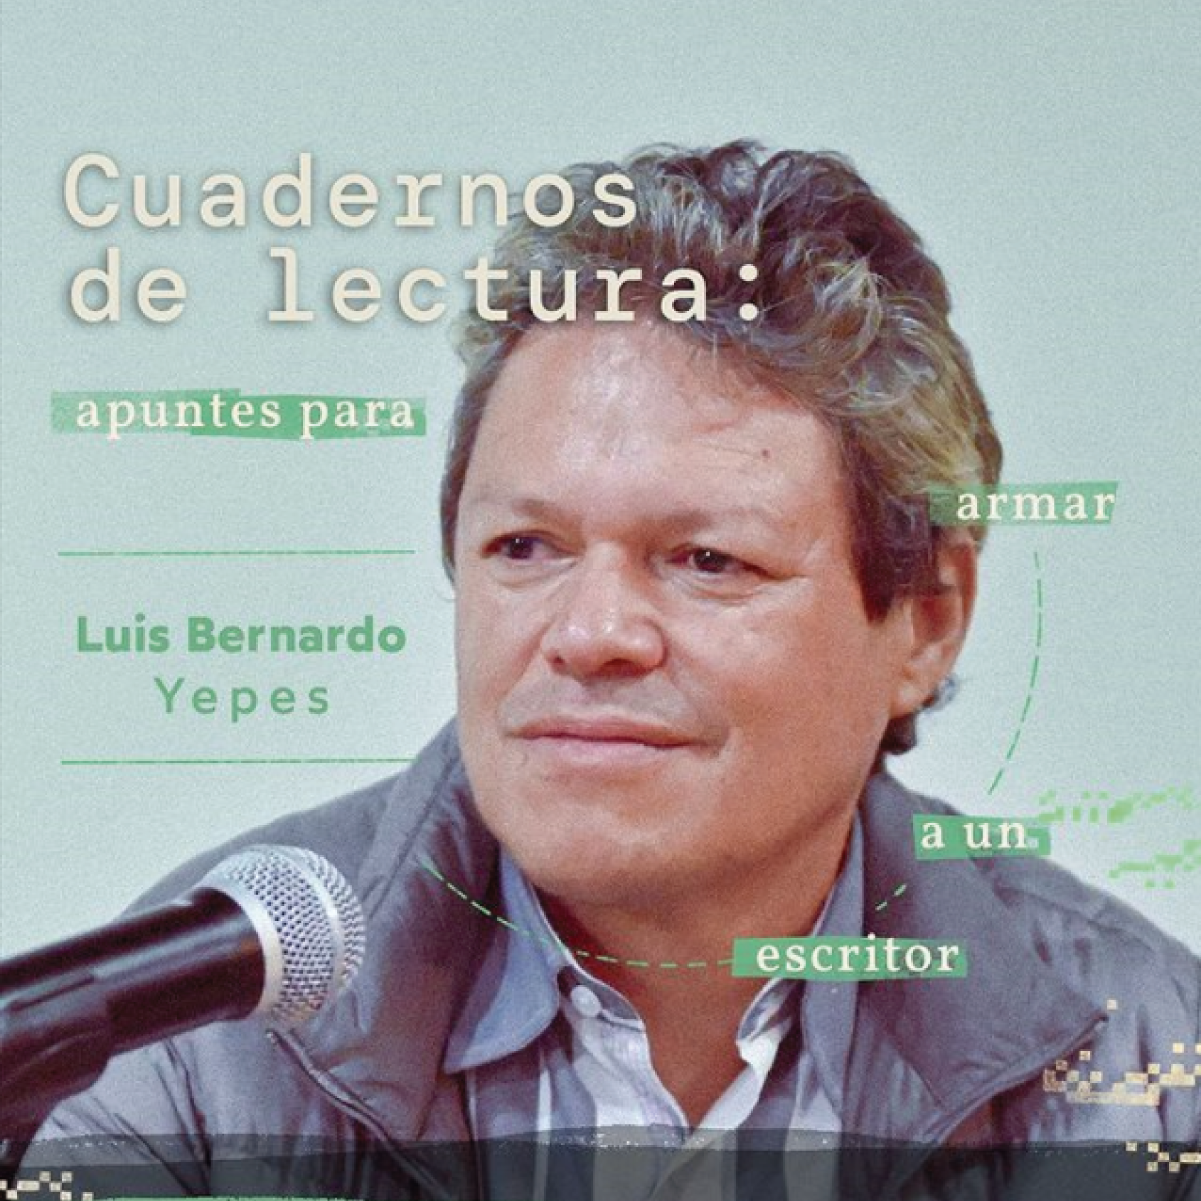 Luis Bernardo Yepes